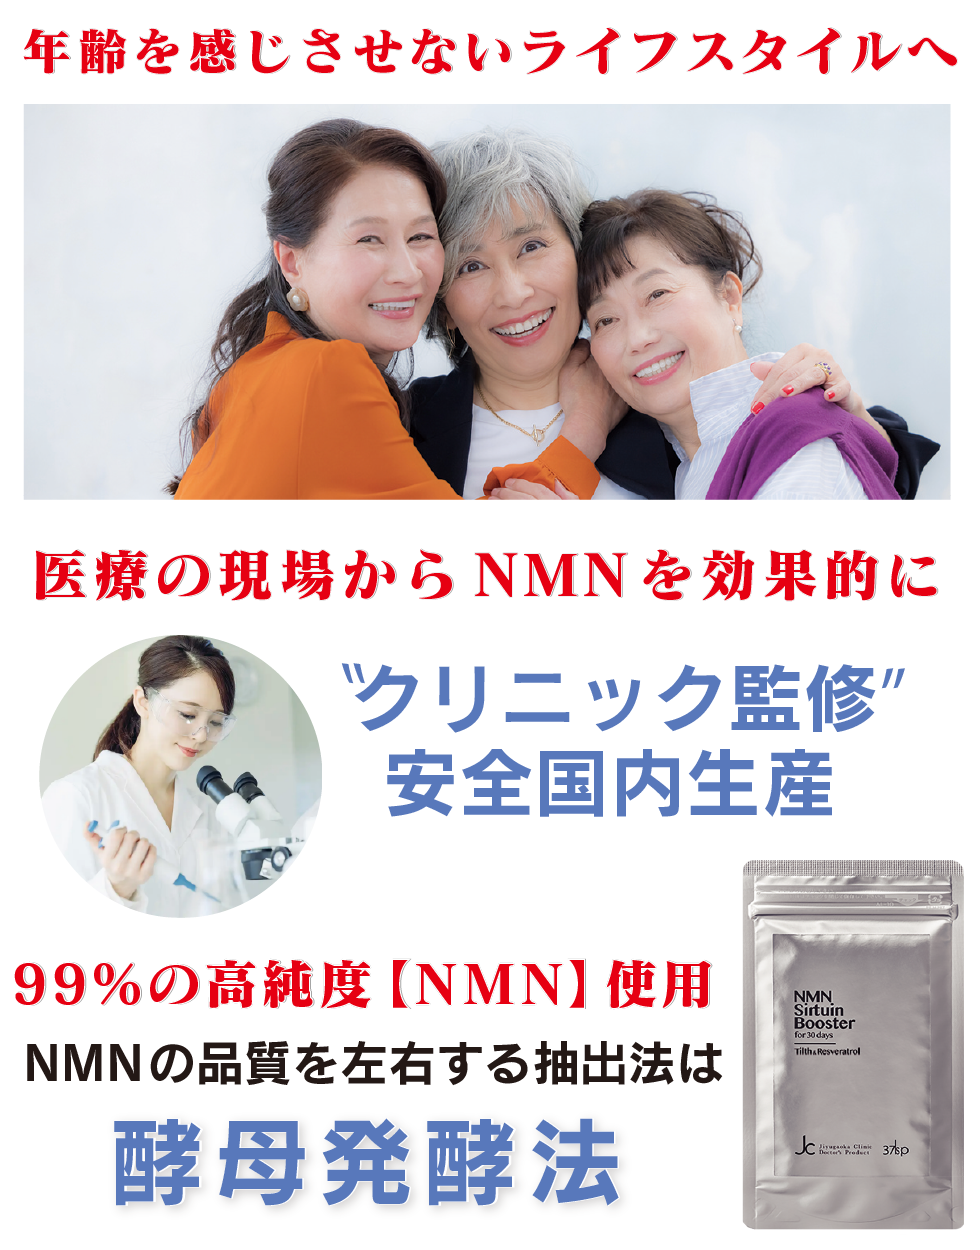 高純度NMN使用